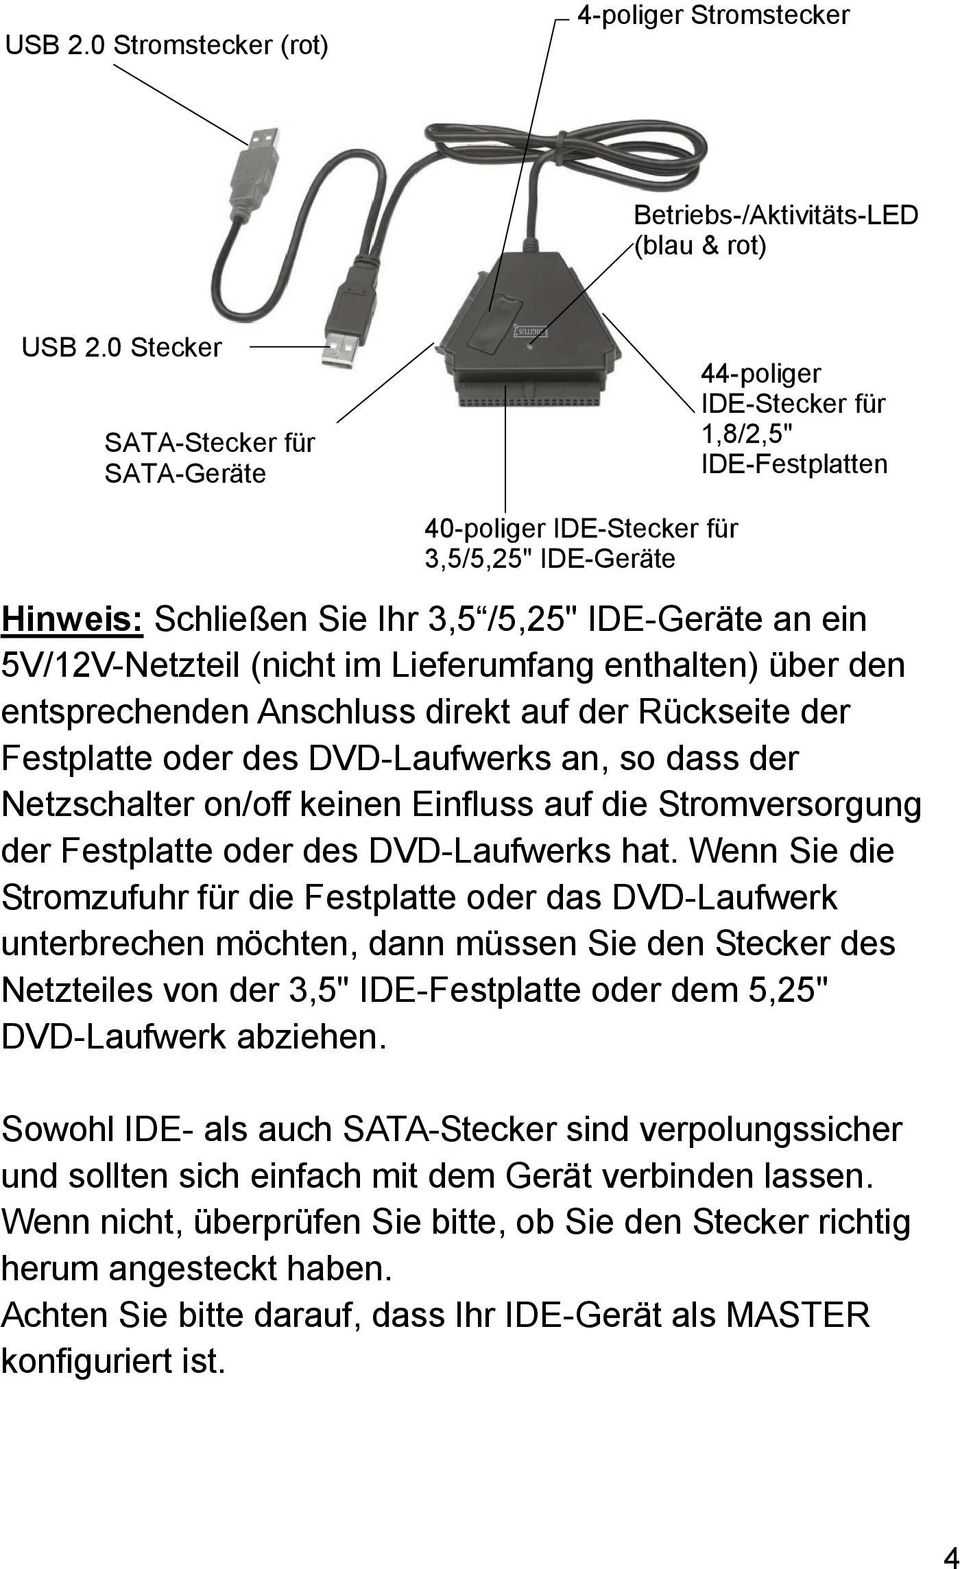 5V/12V-Netzteil (nicht im Lieferumfang enthalten) über den entsprechenden Anschluss direkt auf der Rückseite der Festplatte oder des DVD-Laufwerks an, so dass der Netzschalter on/off keinen Einfluss